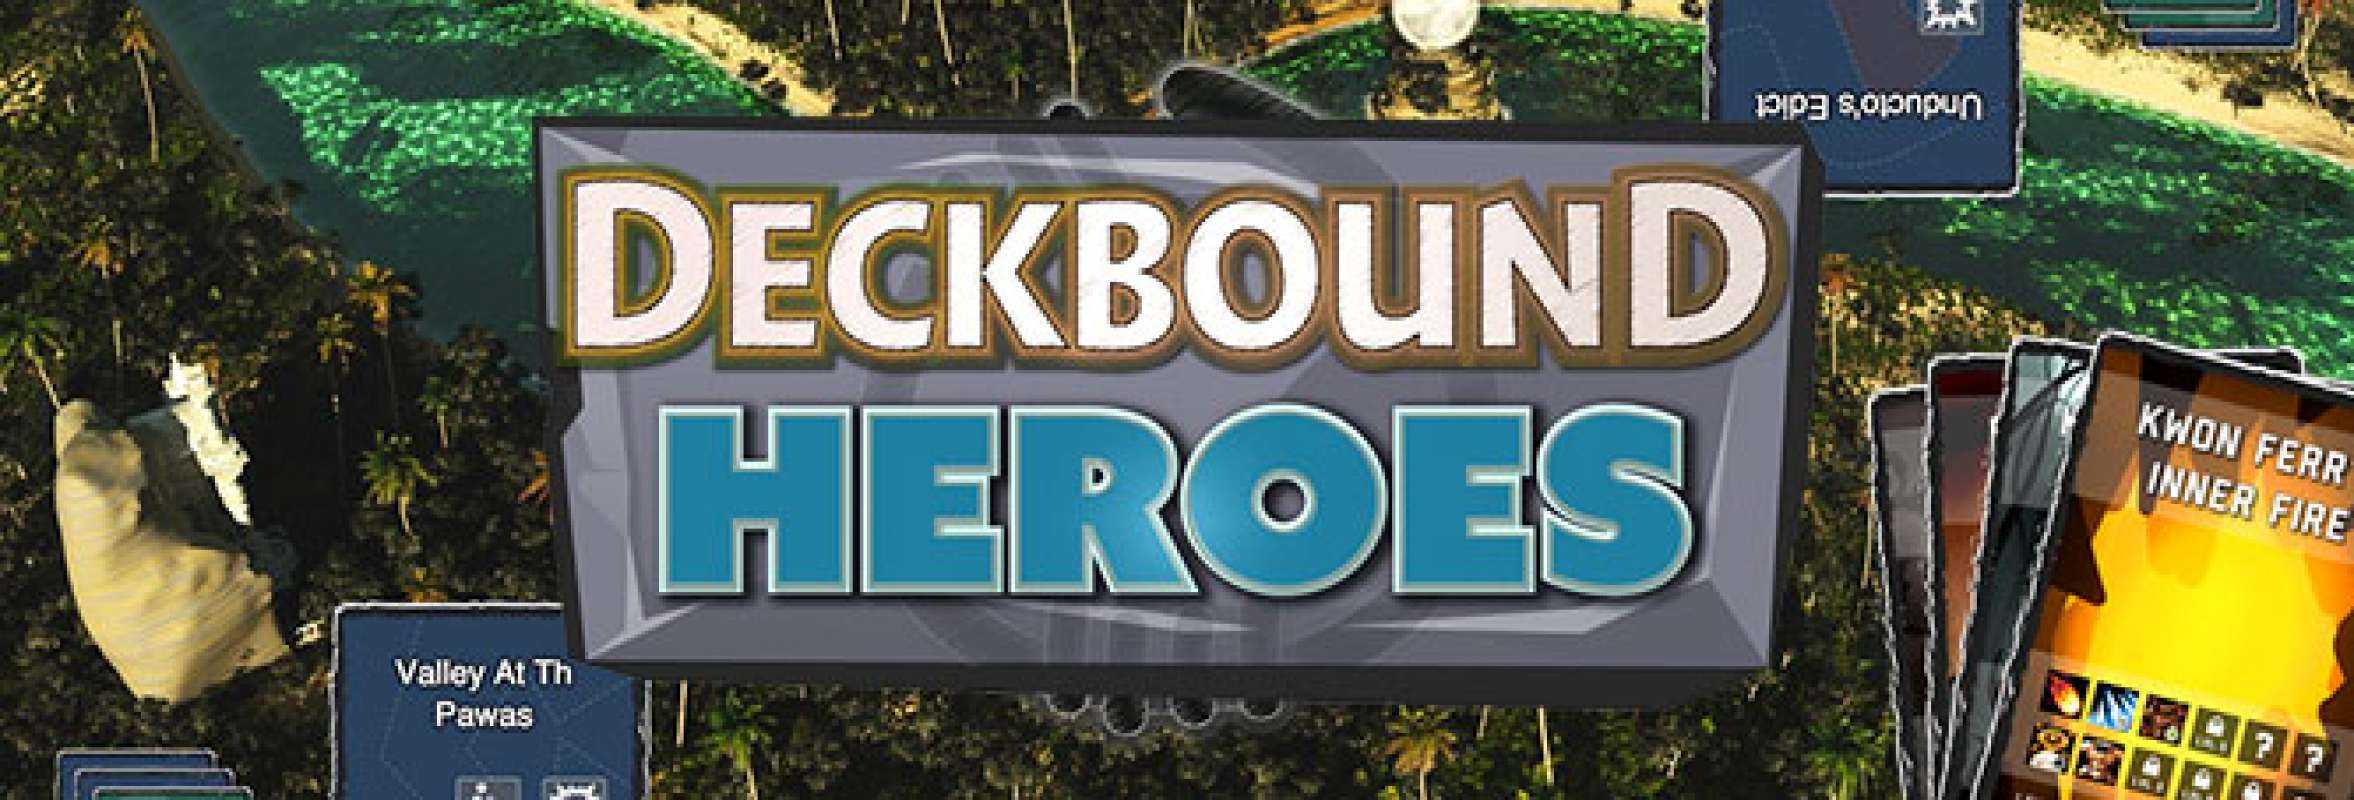 Deckbound Heroes